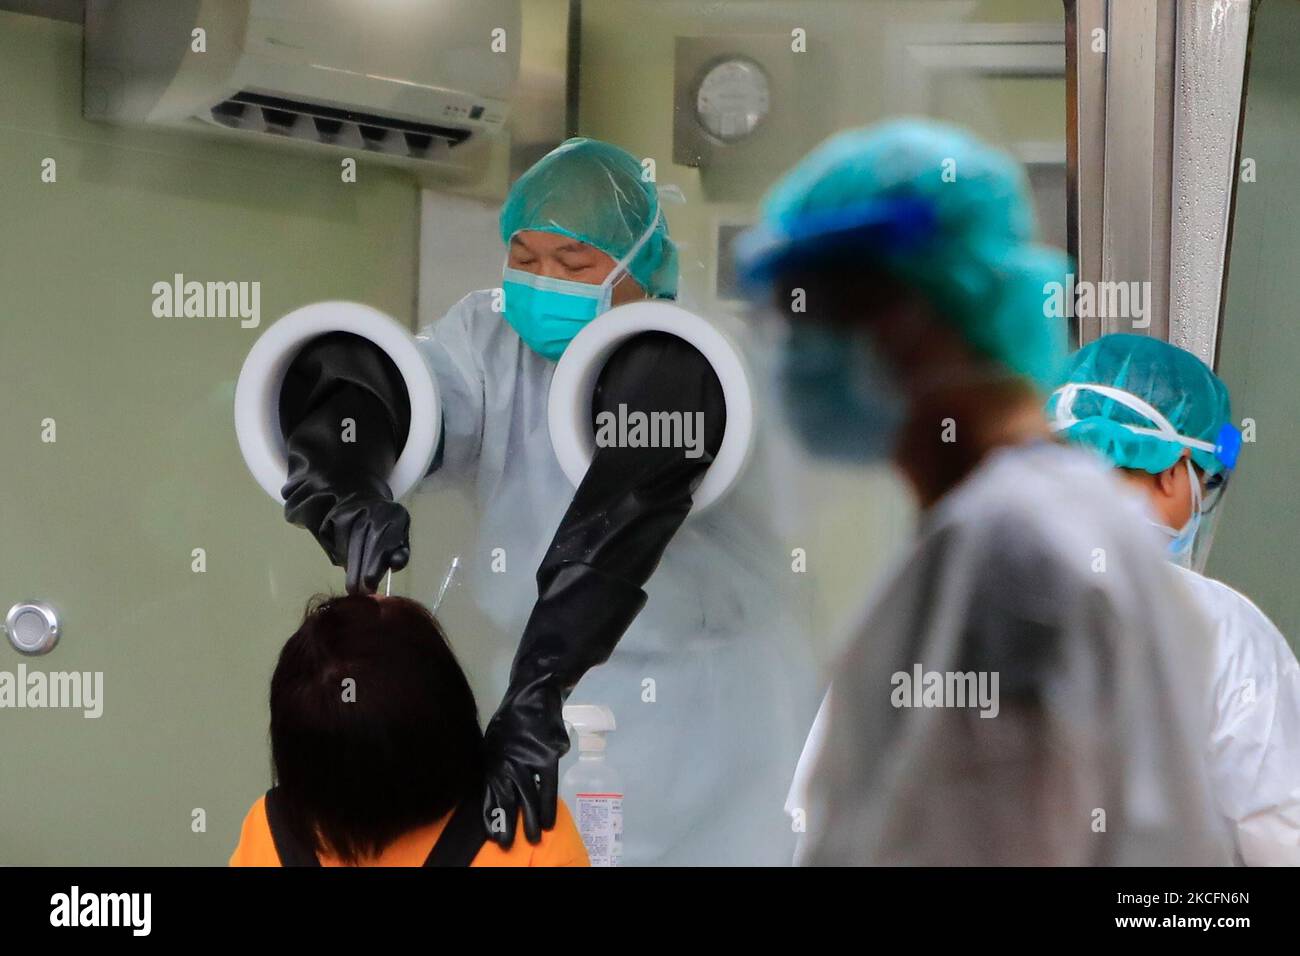 Les gens continuent de recevoir un test Covid rapide dans un hôpital où des travailleurs médicaux portant un EPI les administrent, suite à une augmentation du nombre de décès et d'infections domestiques chez Covid-19, à New Taipei, Taïwan, le 5 juin 2021. Selon les CDC de Taïwan, dimanche, 36 nouveaux décès et 335 cas domestiques ont été signalés, sans pour aucun autre approvisionnement en vaccins. (Photo de CEng Shou Yi/NurPhoto) Banque D'Images